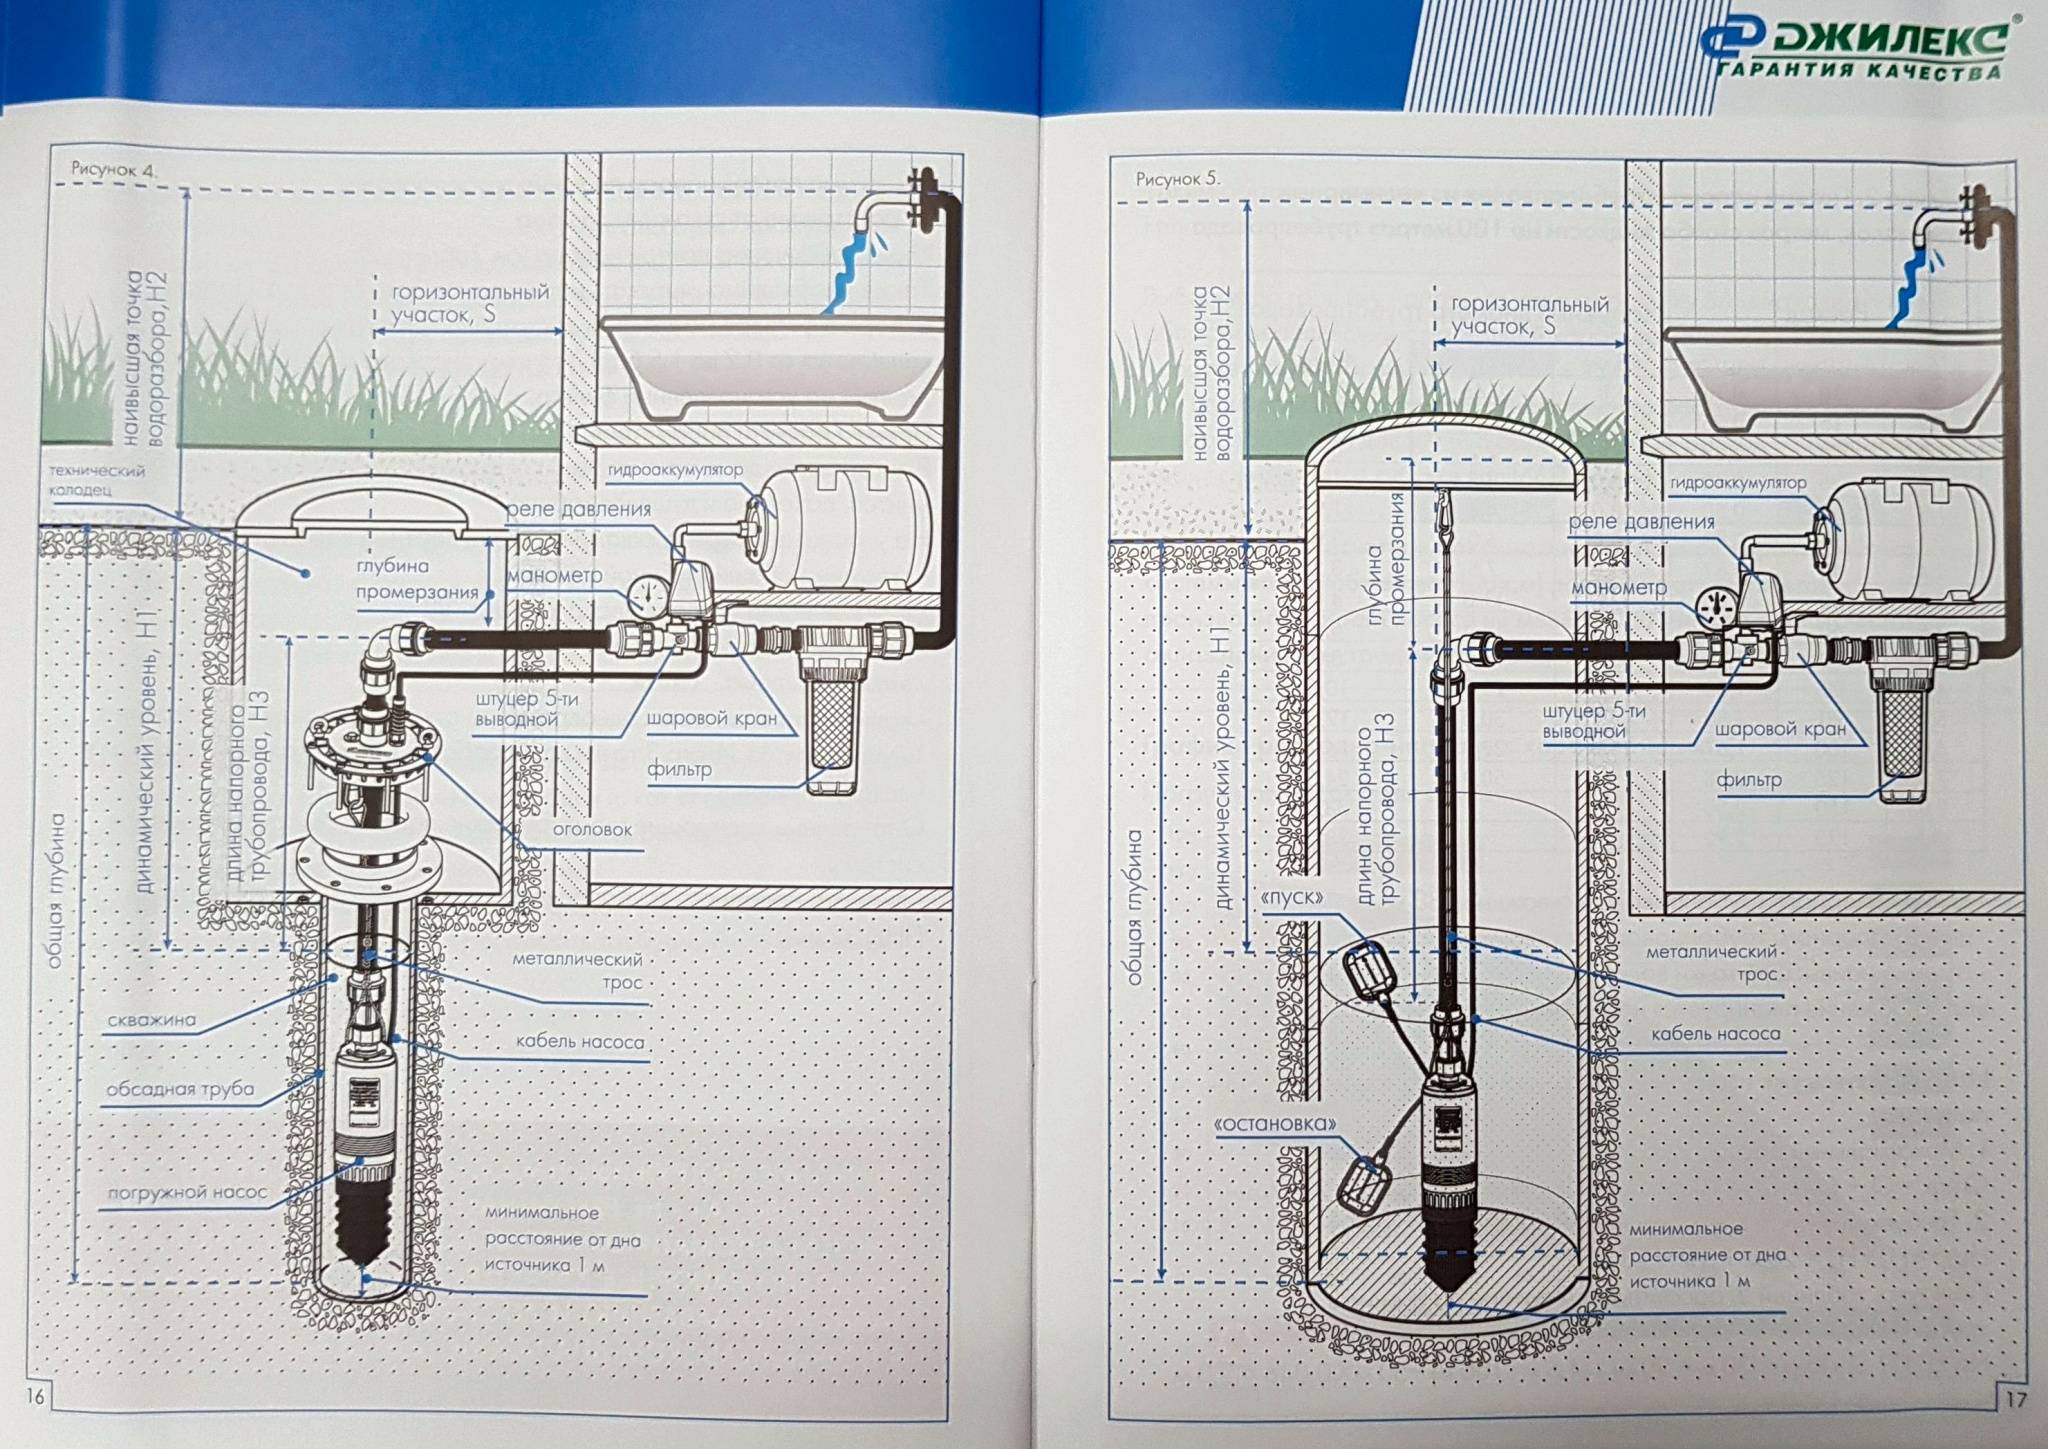 Водяной насос "водомет": обзор погружных и глубинных моделей - все об инженерных системах